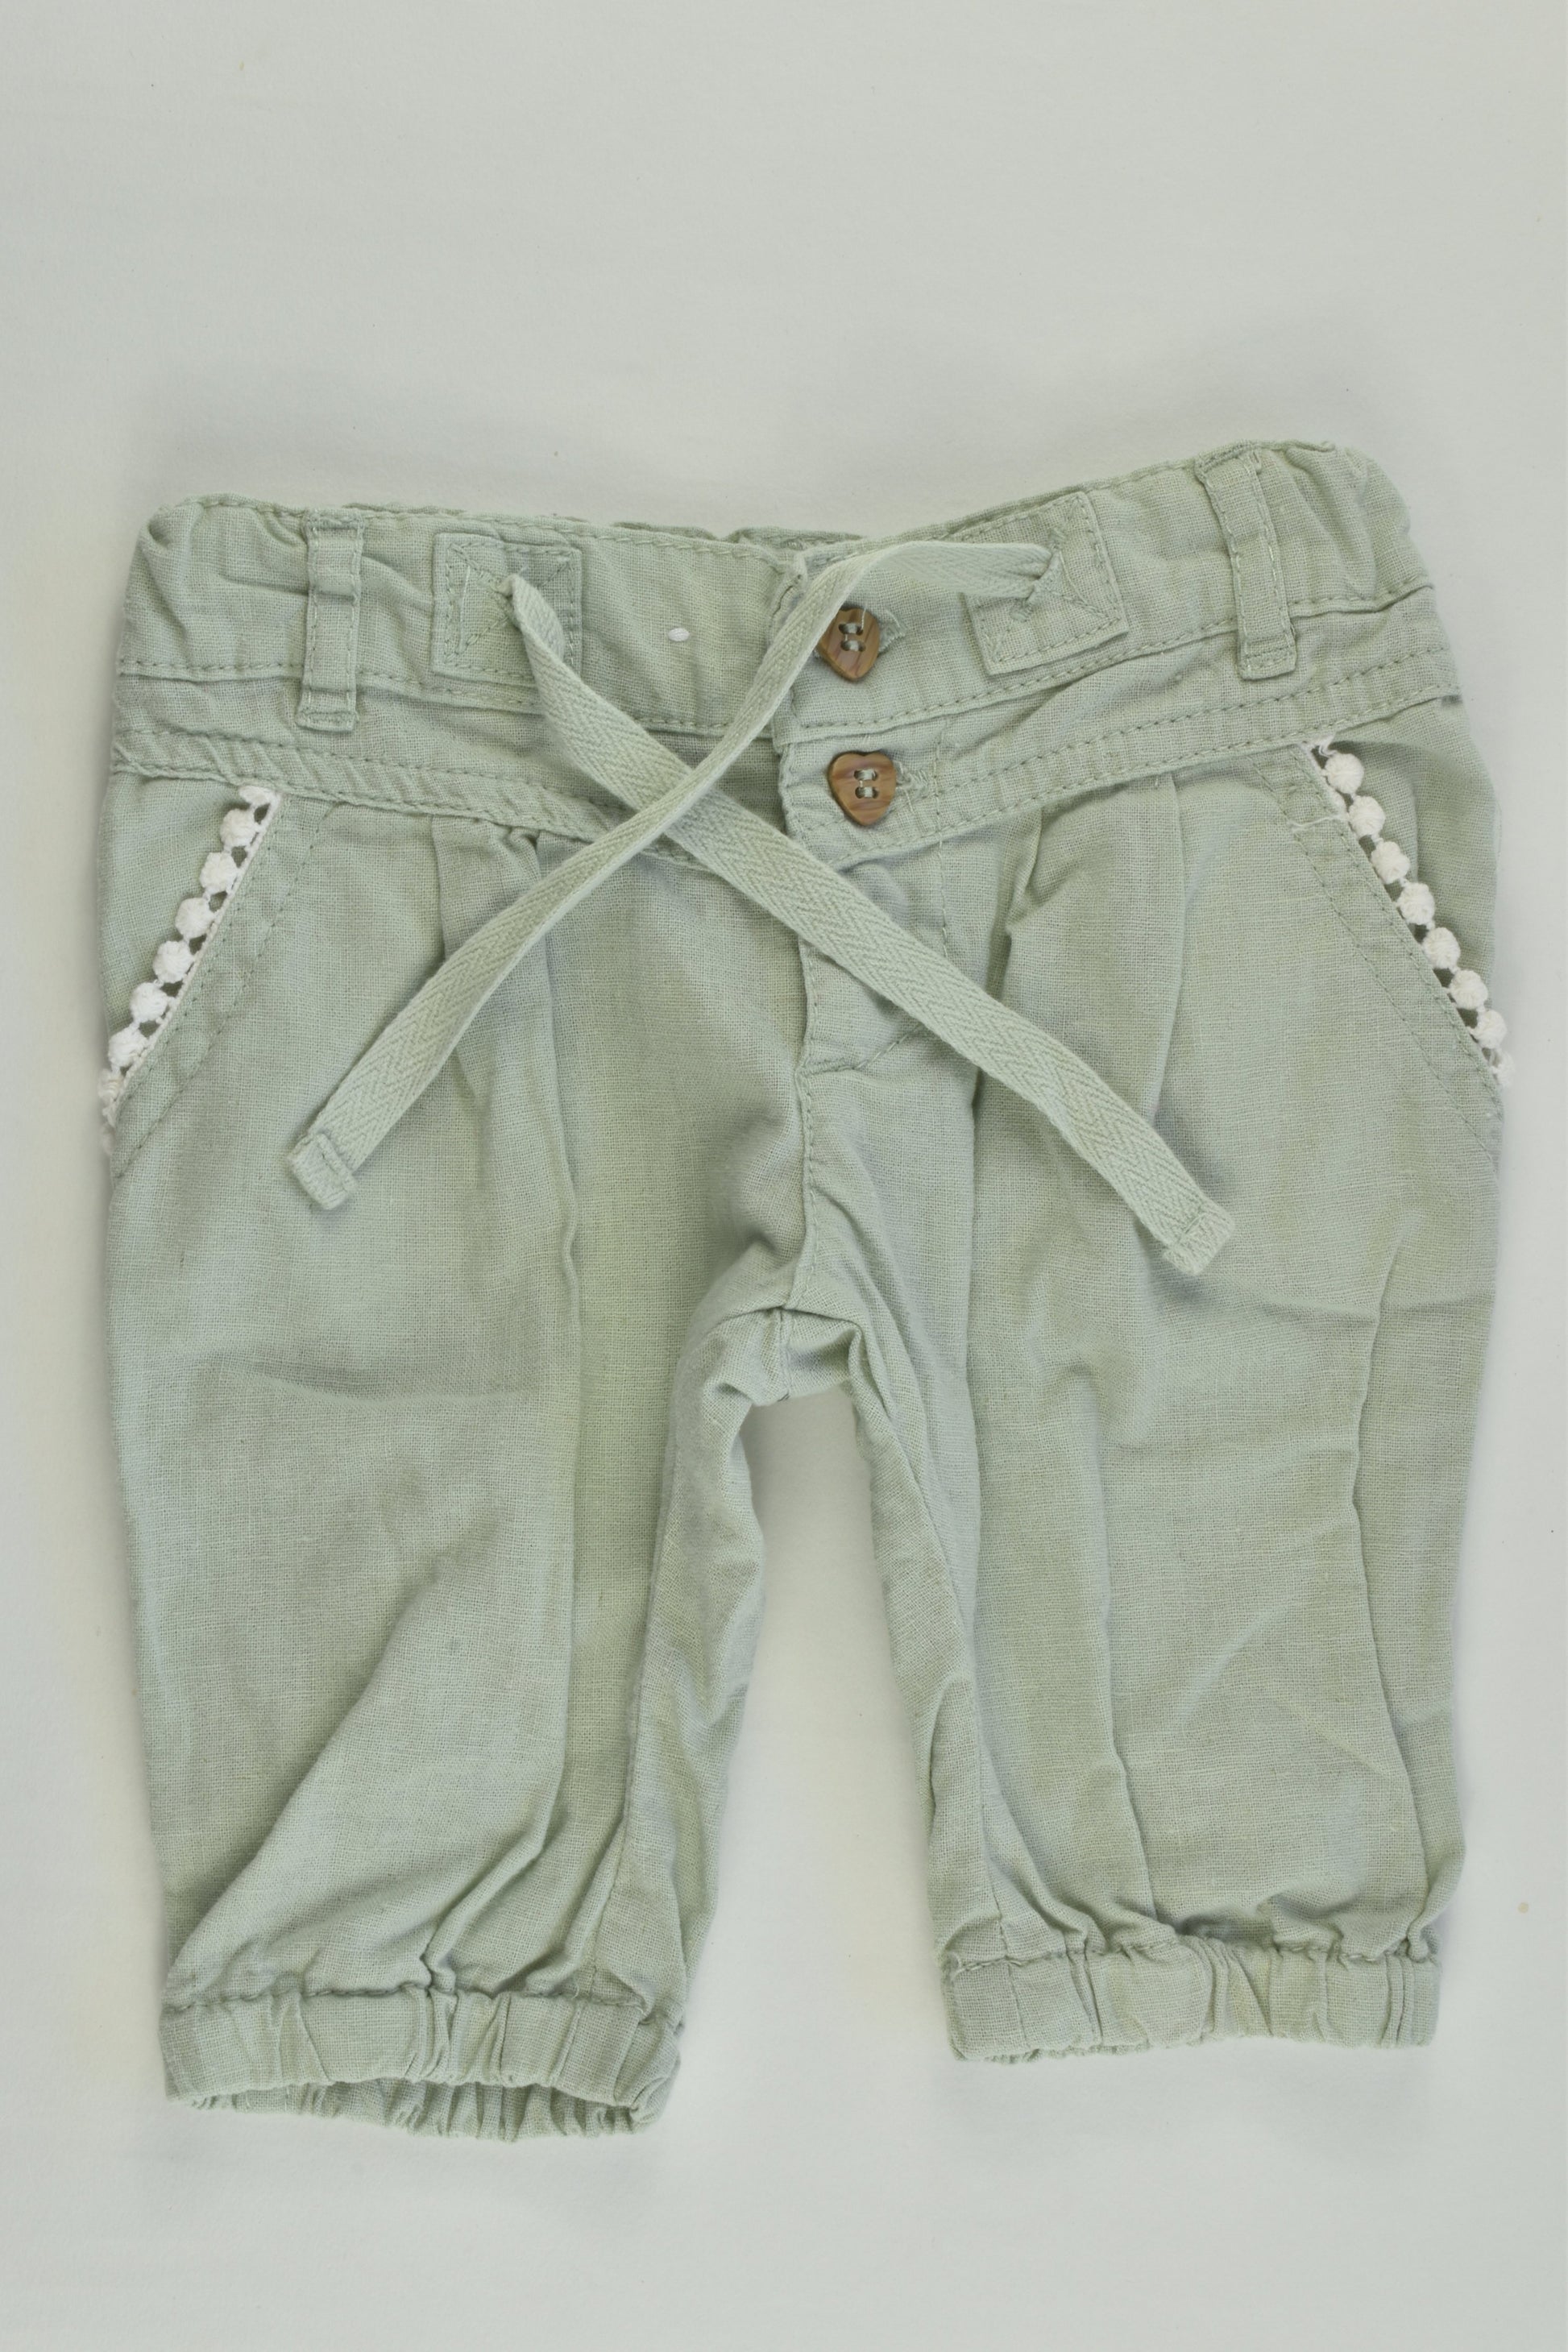 Target Size 00 (3-6 months) Linen/Cotton Pants